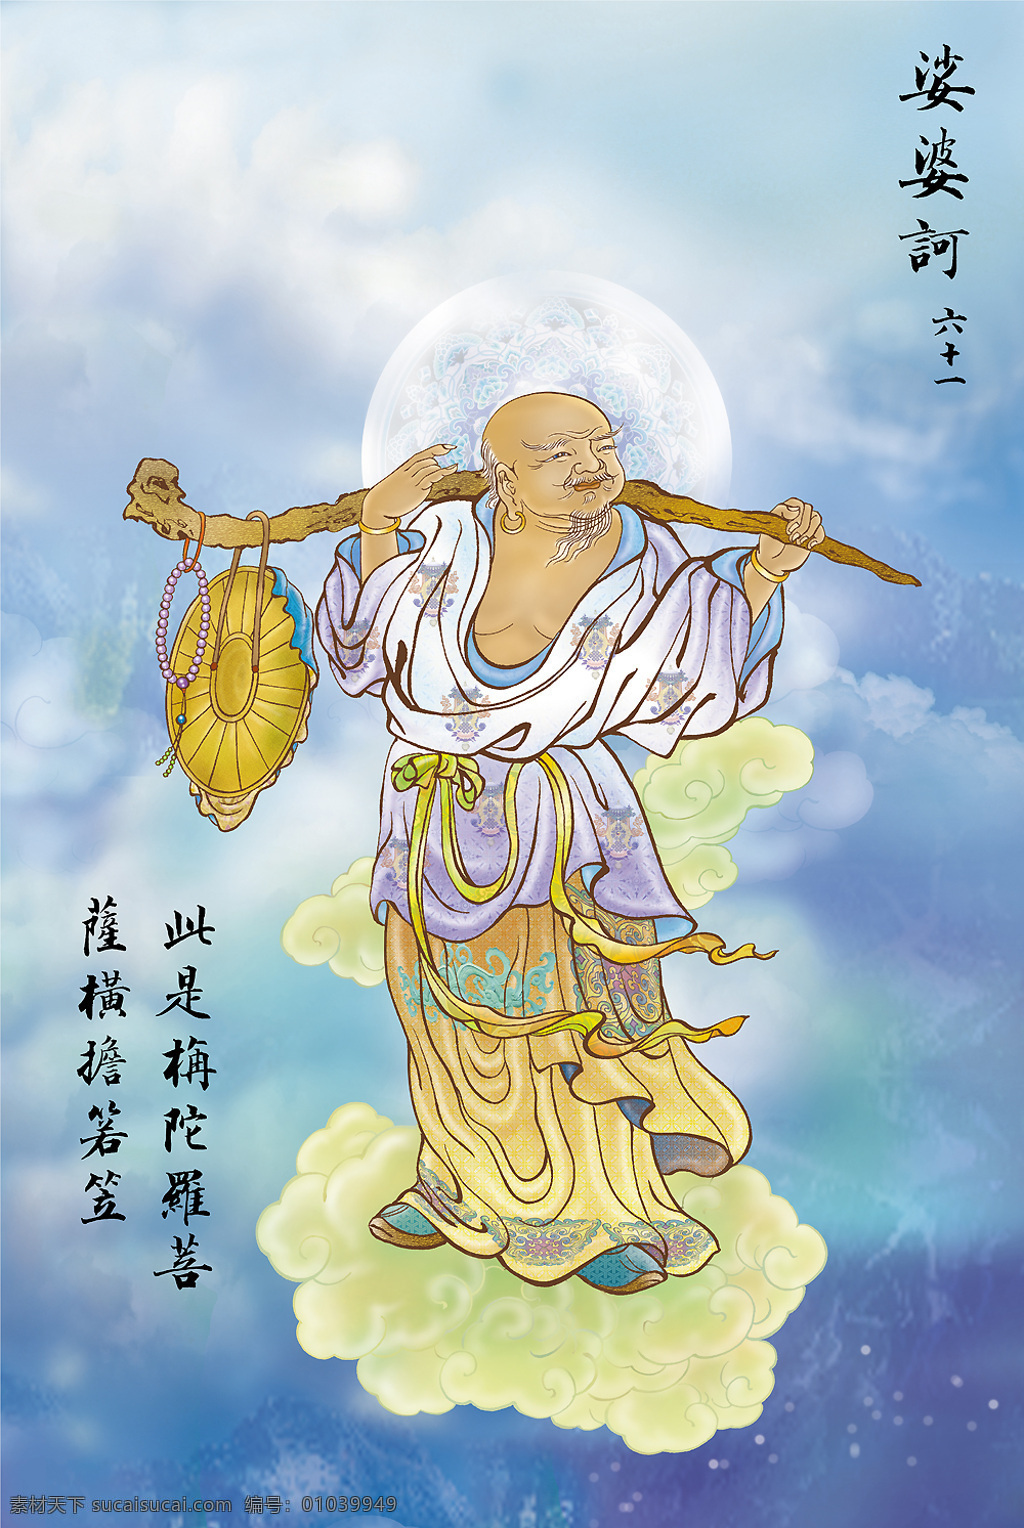 大悲 出 相图 61 佛教 依林法师画 林隆达居士书 台湾 文化艺术 宗教信仰 设计图库